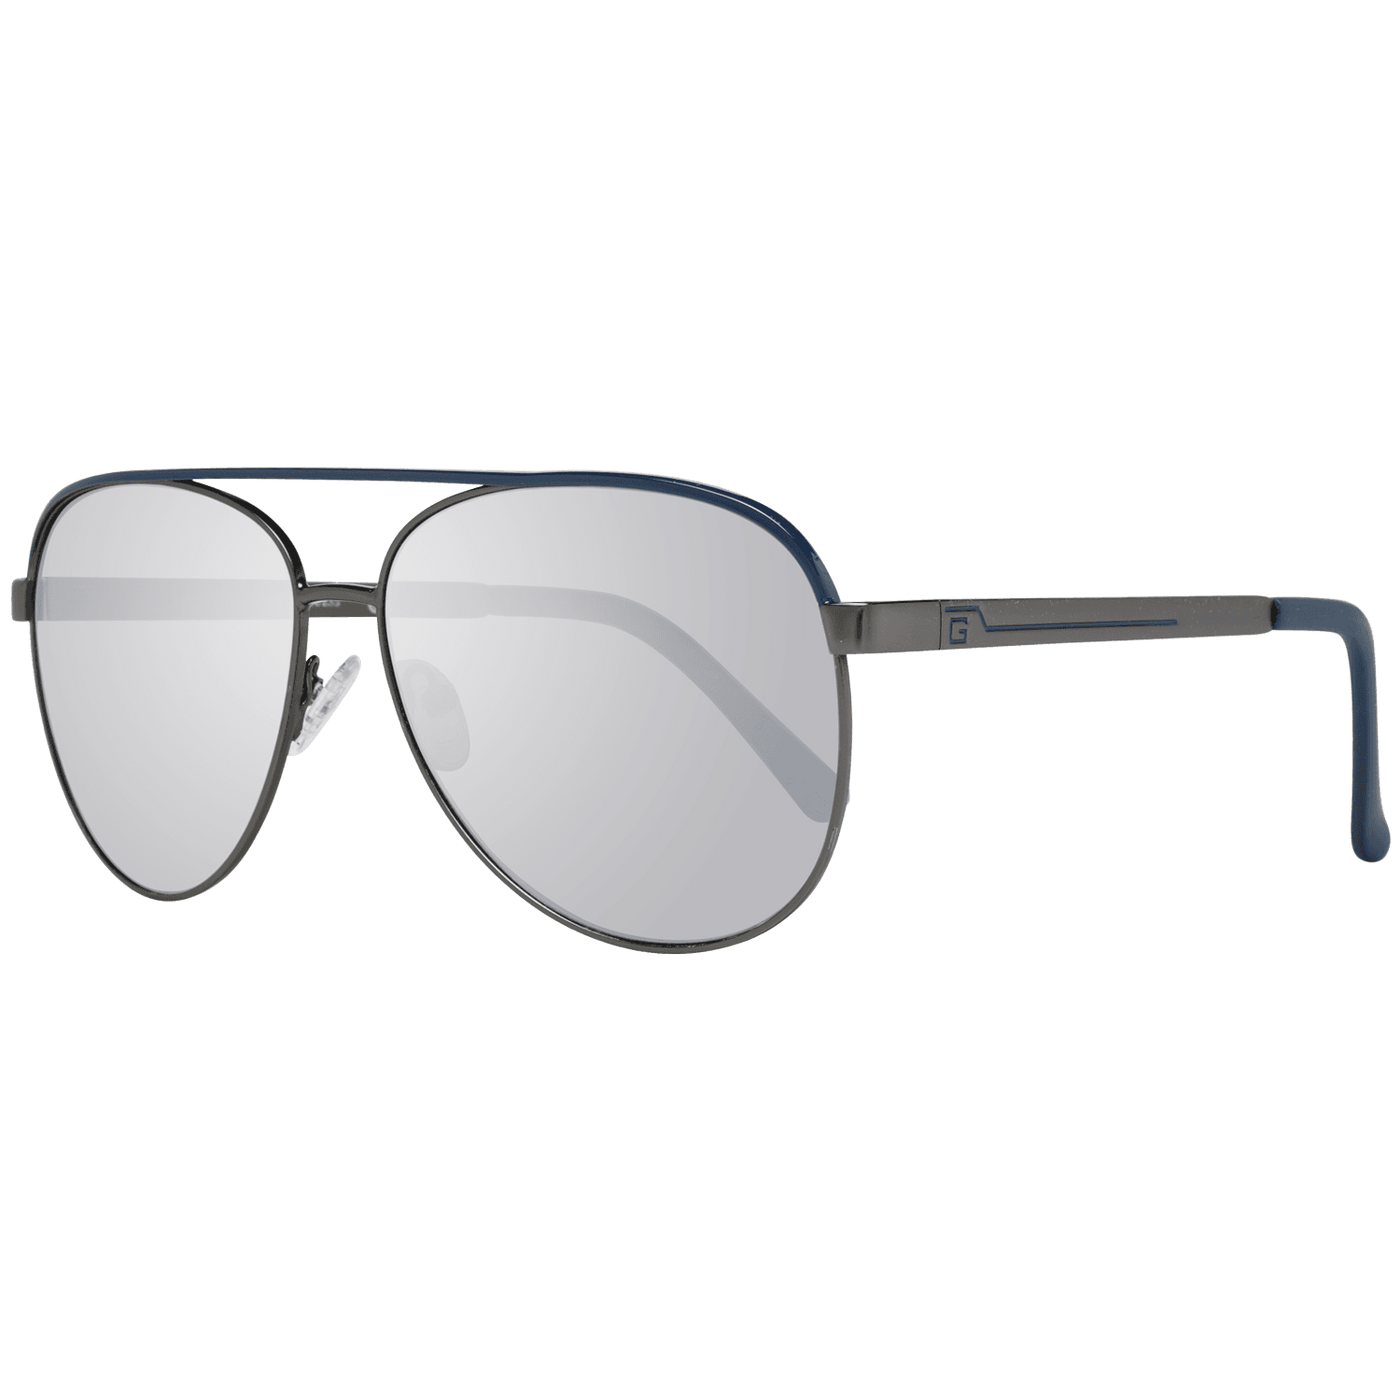 Guess Gray Sunglasses #men, feed-1, Gray, Guess, Sunglasses for Men - Sunglasses at SEYMAYKA